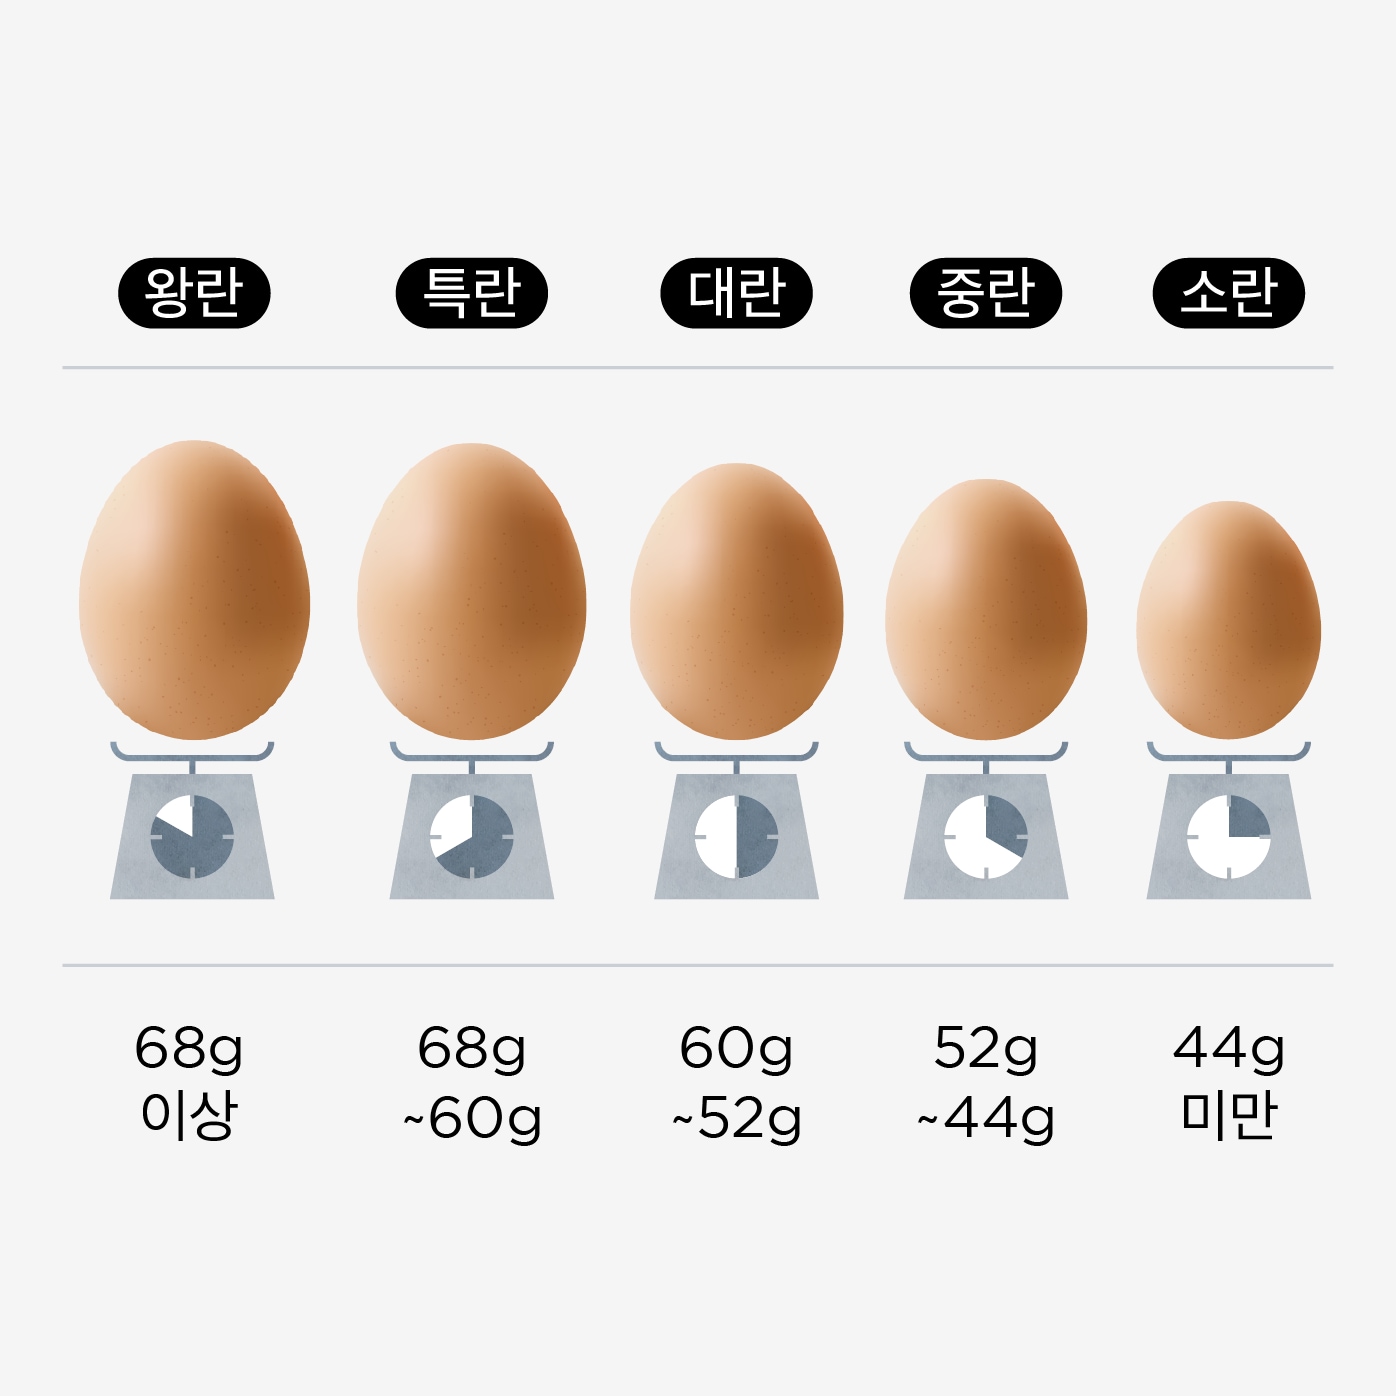 중량별 계란 등급비교 이미지